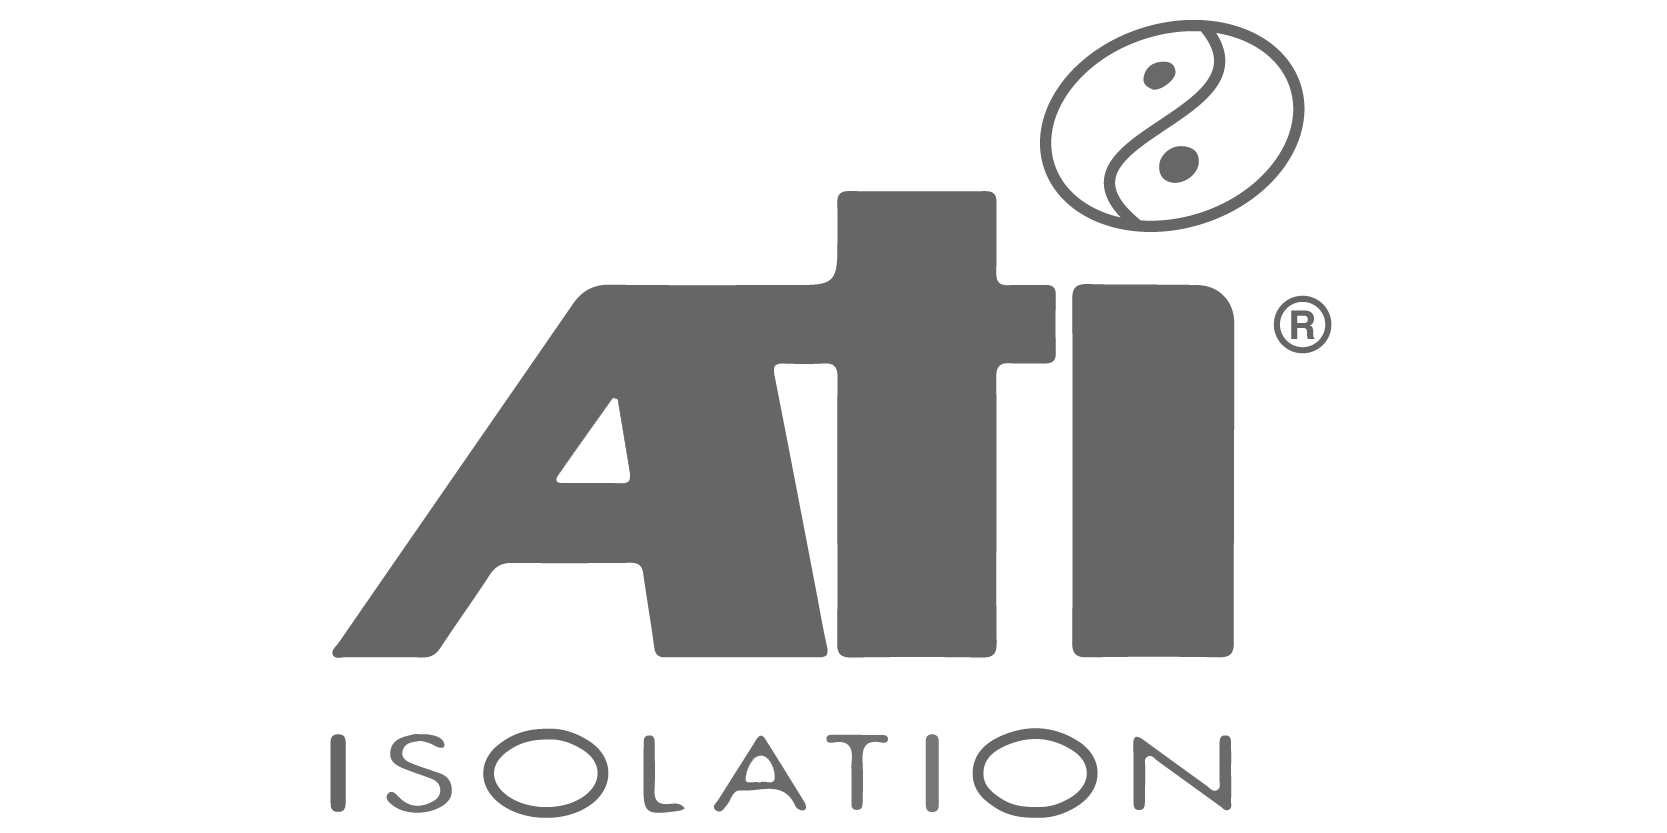 ATI_isolation